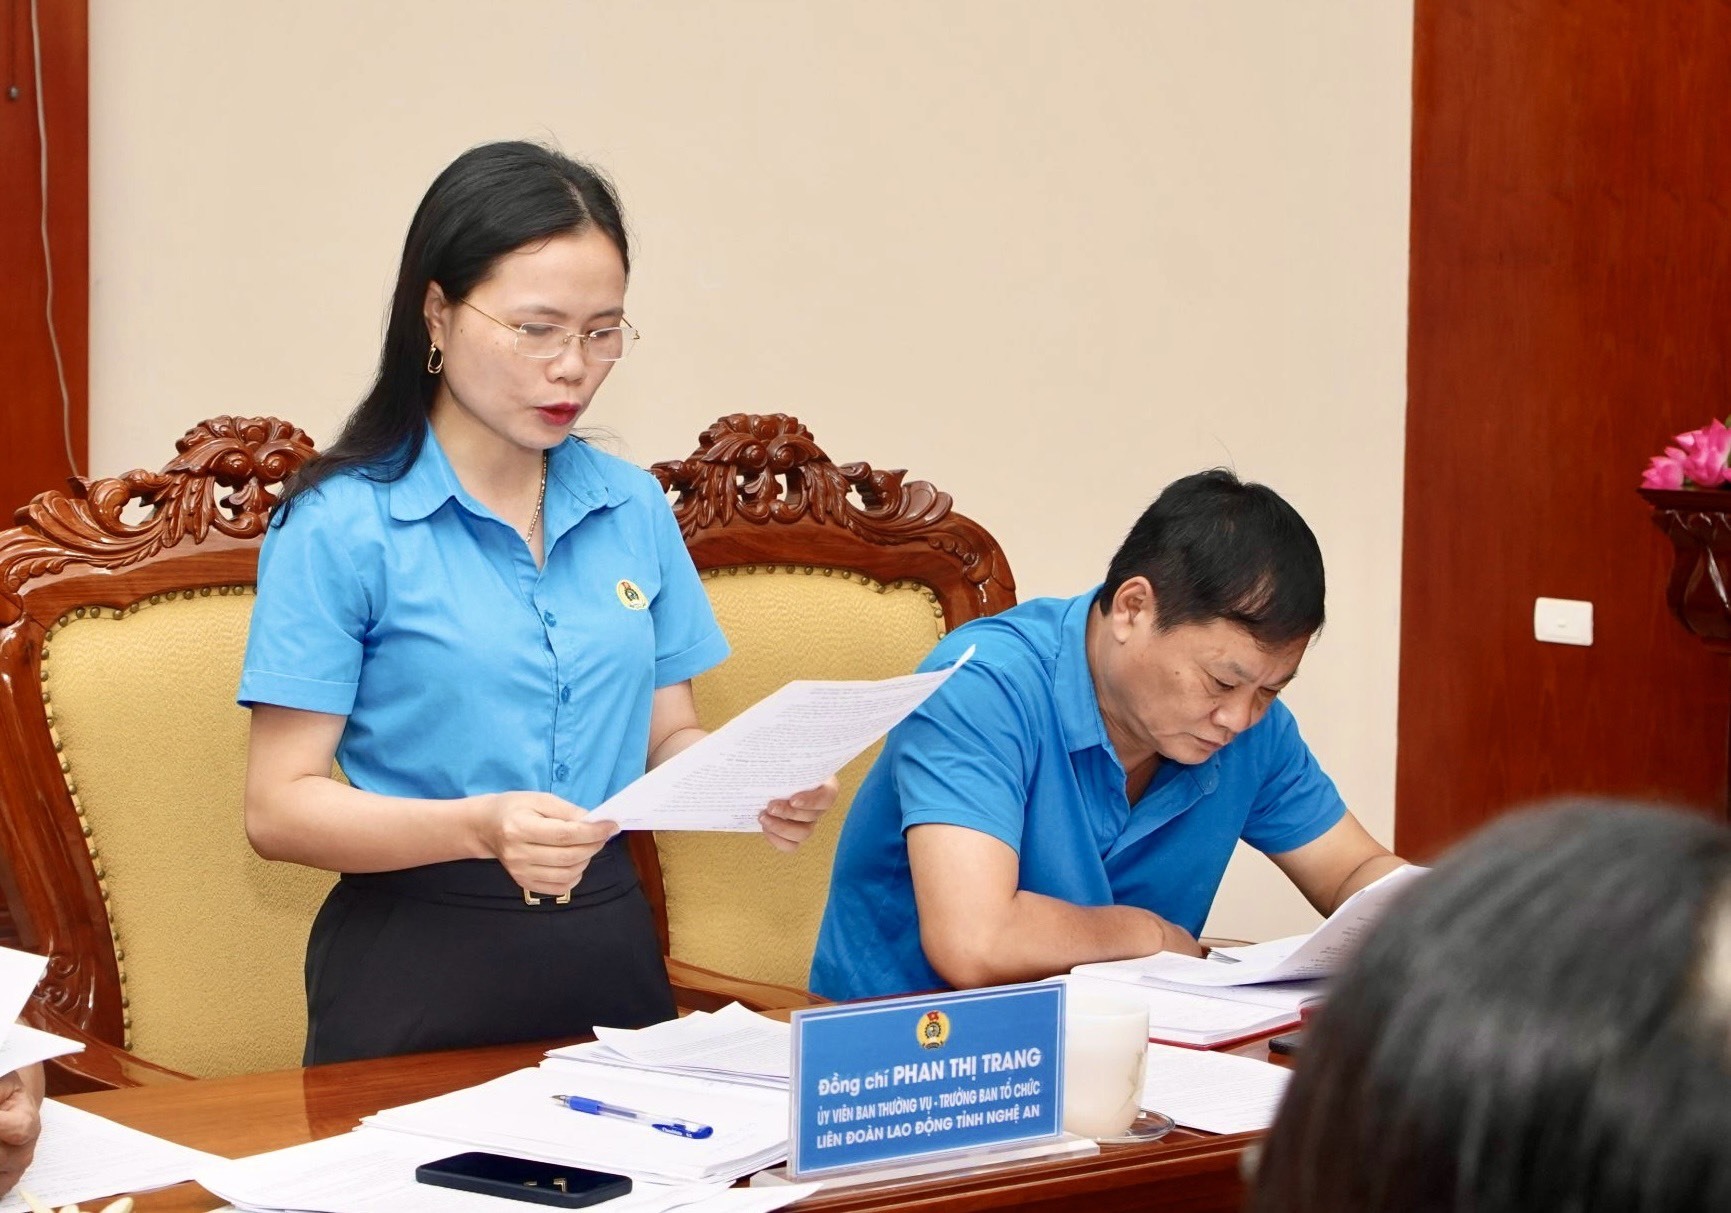 Bà Phan Thị Trang - Trưởng ban Tổ chức Liên đoàn Lao động tỉnh trình bày nội dung Đề án “Nâng cao chất lượng và hiệu quả hoạt động công đoàn cơ sở tại Khu Kinh tế Đông Nam và công đoàn cơ sở có đông công nhân lao động“. Ảnh: Quỳnh Trang